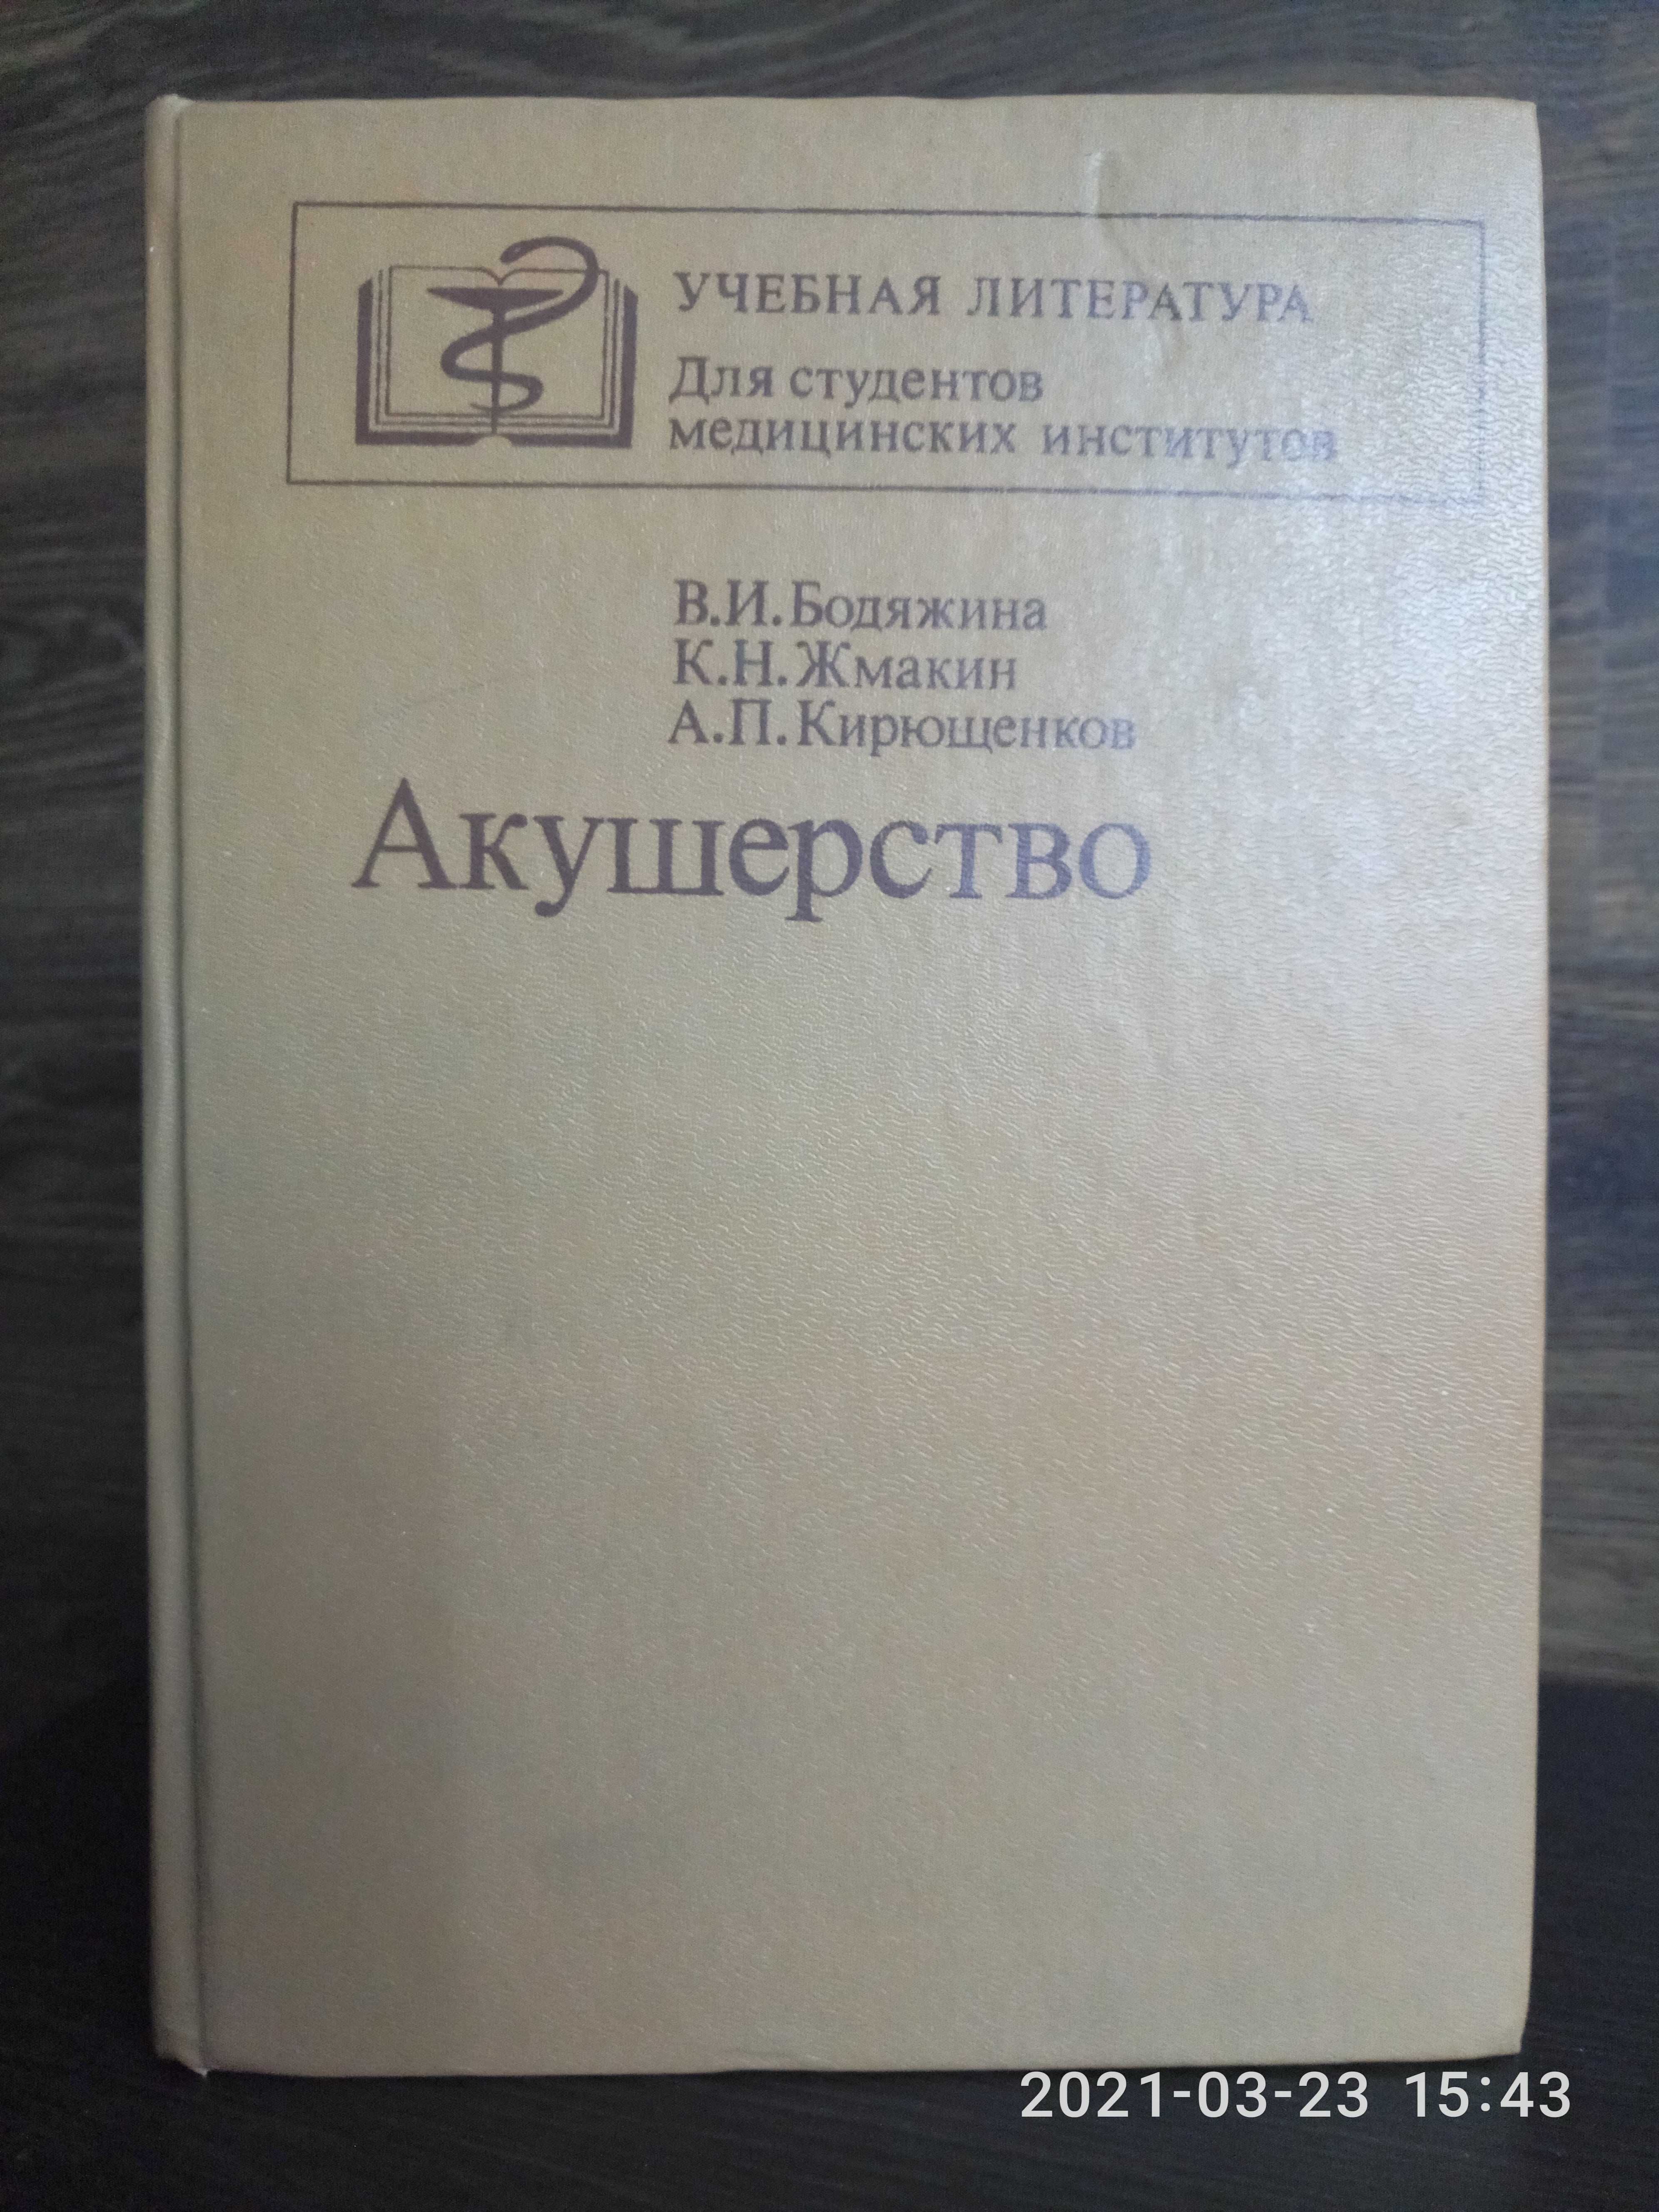 Акушерство, В.И. Бодяжина, К.Н. Жмакин, А.П.Кирющенков 1986 г